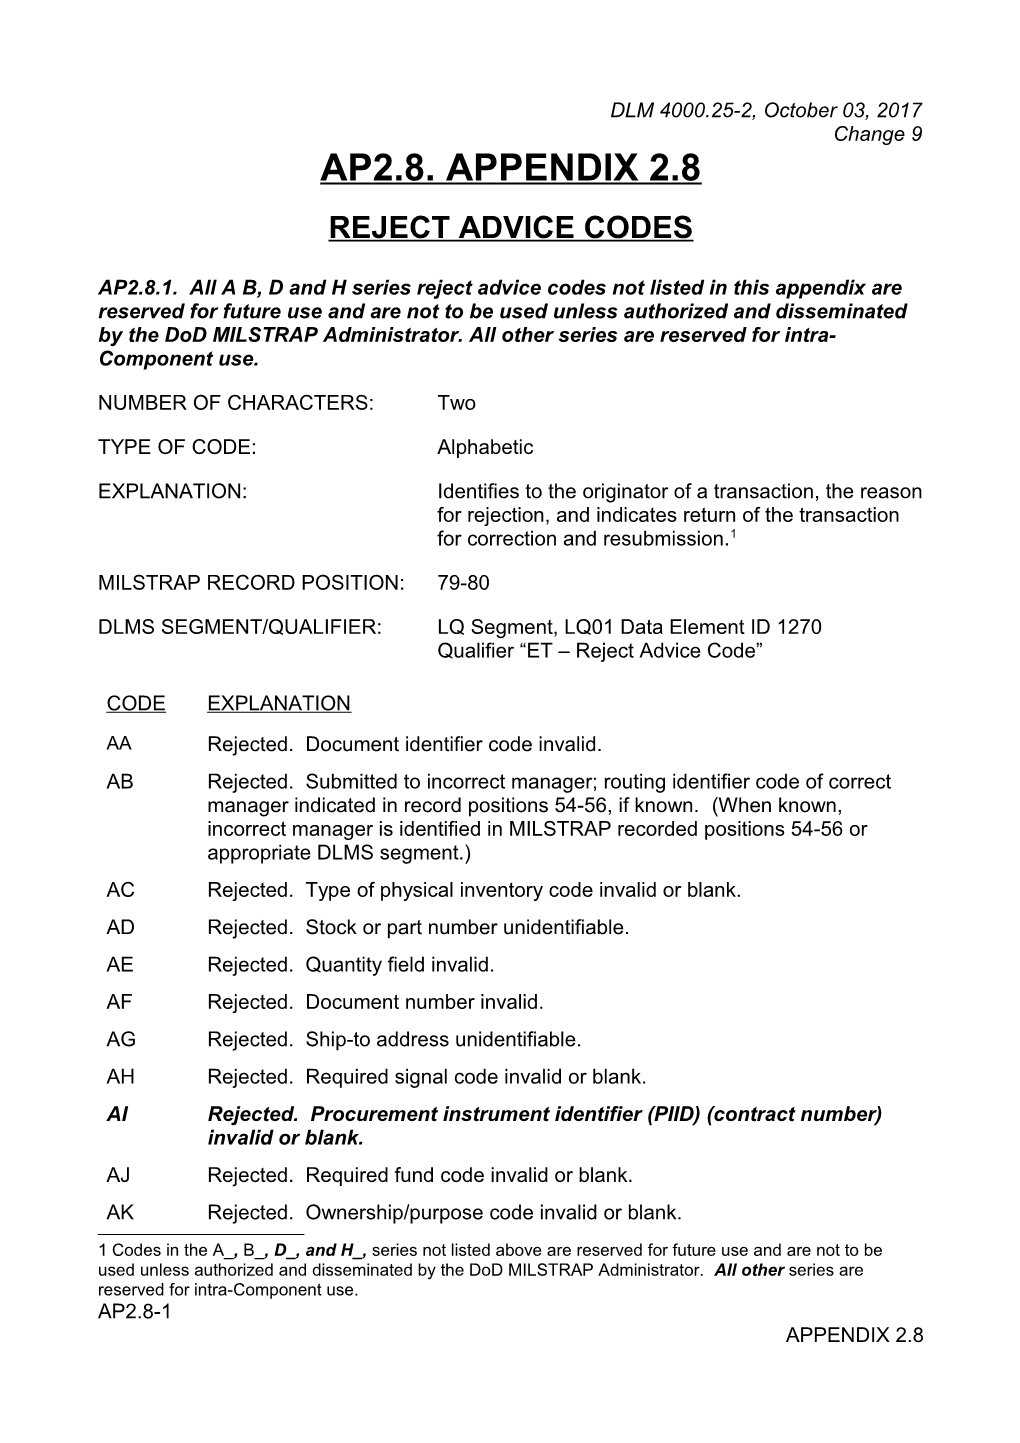 MILSTRAP AP2.8 Reject Advice Codes